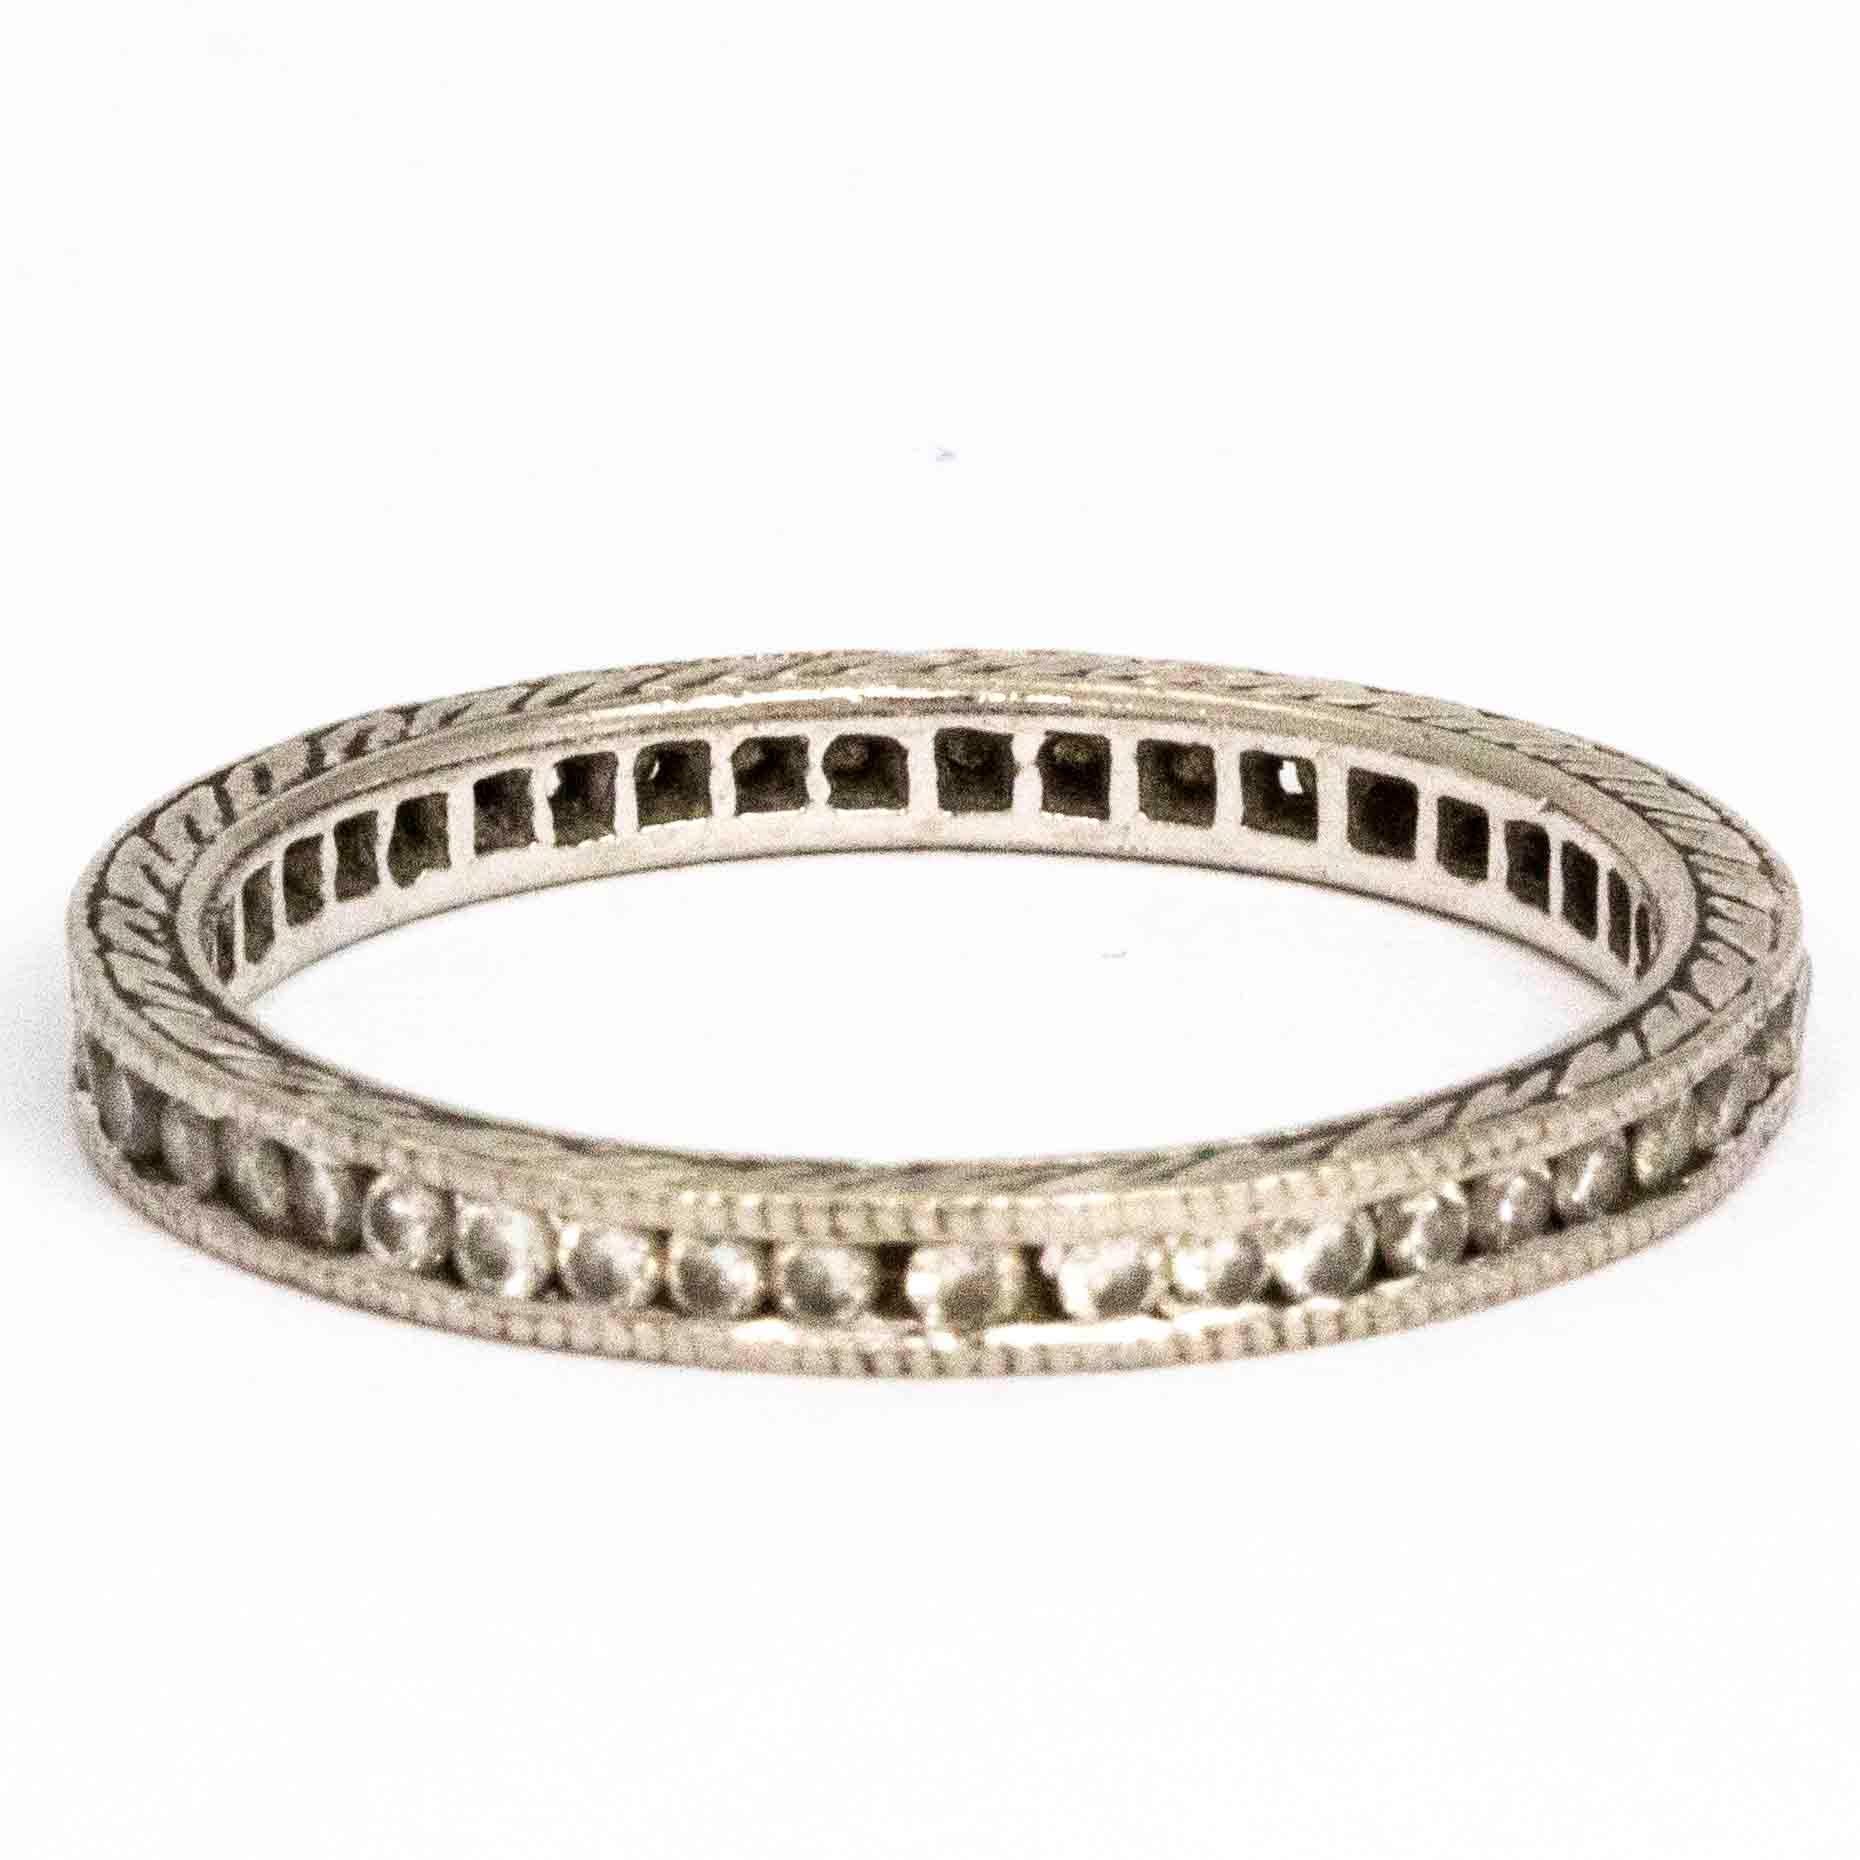 Die zarten runden Diamanten, die in diesem Ring eingefasst sind, messen jeweils ca. 1pt und das Band ist aus Platin modelliert. Das Band selbst hat eine wunderschöne Gravur rundherum. 

Ring Größe: M oder 6
Breite des Bandes: 2mm